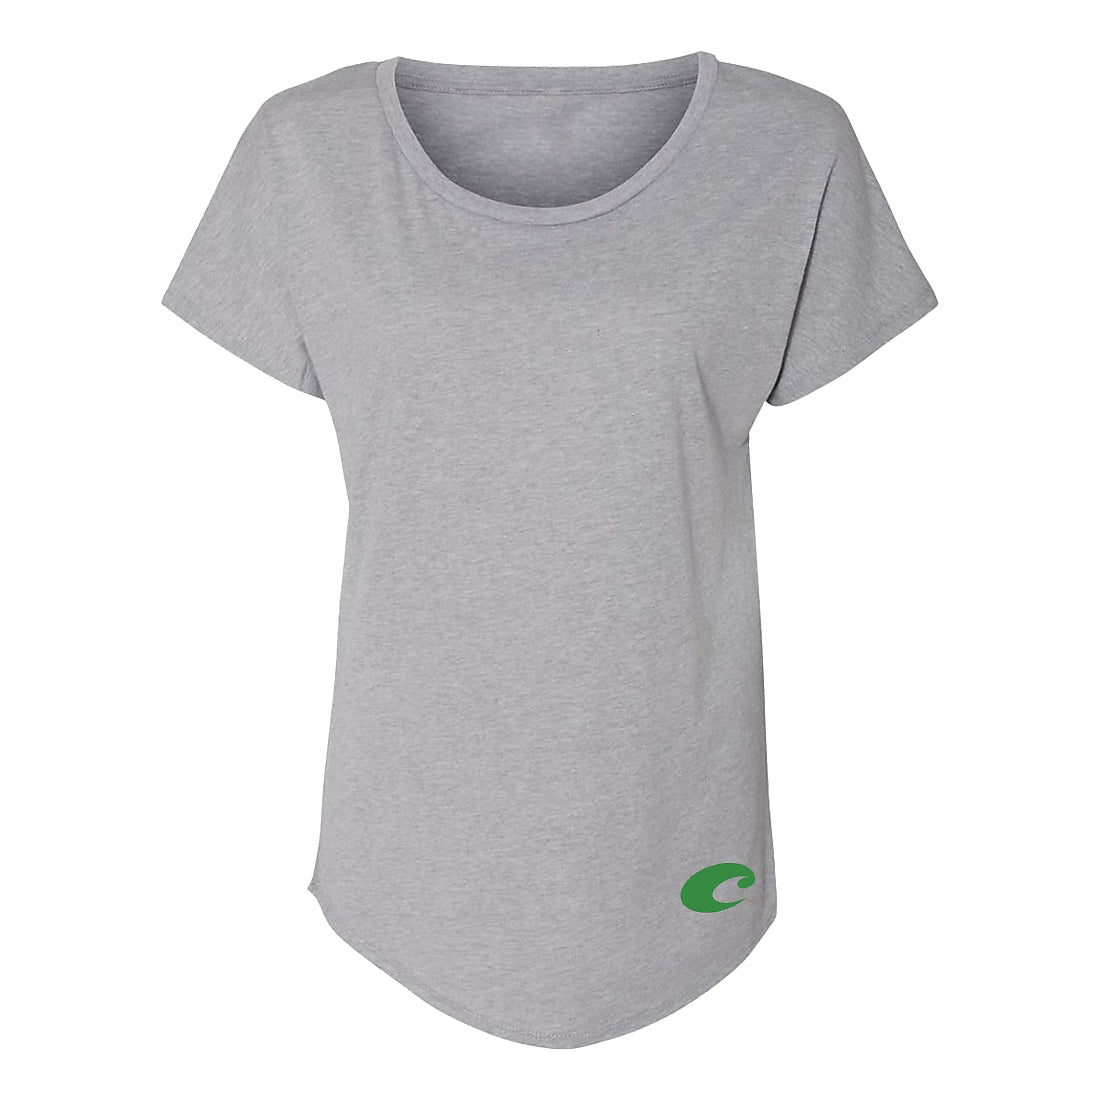 Costa Women&#39;s Overgrowth Short Sleeve T-Shirt